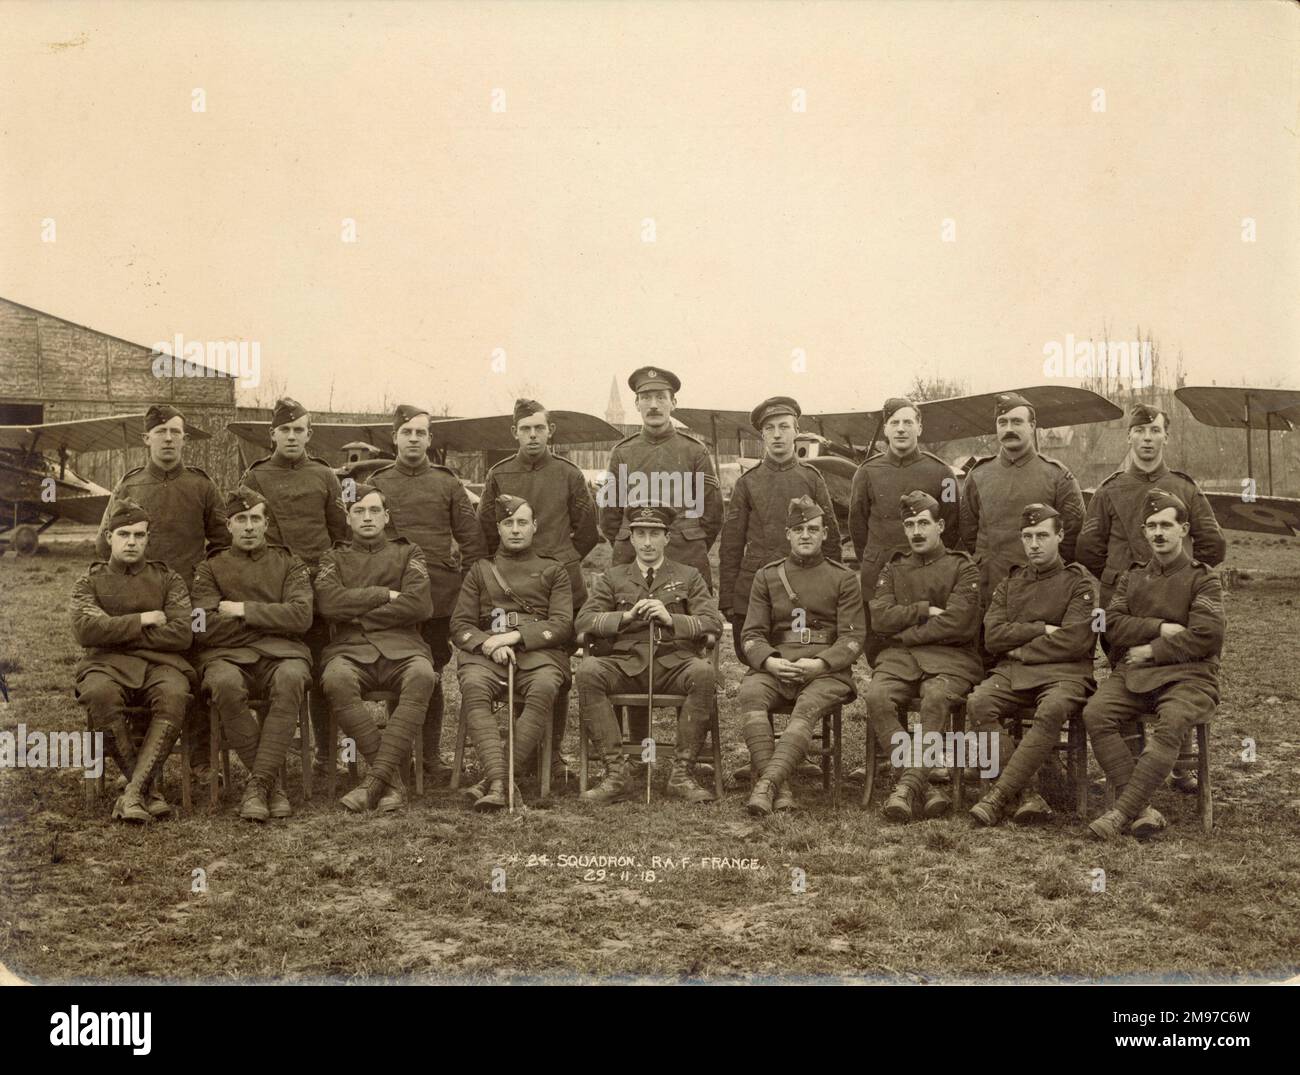 Haftbefehle, Flugsergeanten und Sergeanten der No24. Geschwader RAF in Frankreich, 29. November 1918. Hintere Reihe: Sgts A. Dearman, V.E.T. Hoskins, L. Garland, L.C. Cox, A. Wilson, H. Brown, R.A.E. Percy, W. Green und J. W. Welch. Erste Reihe: Sergeant C.H. Peters, Flt Sgts J.H. Langston und F.R.V. Tealby, Sergeant Major L.C. König, Major V.A.H. Robson, MC, T Sgt Major F. Schofield, MSM, Flt Sgts F.T. Thould und H. Edwards und Sgt W.L. Franzosen. Stockfoto